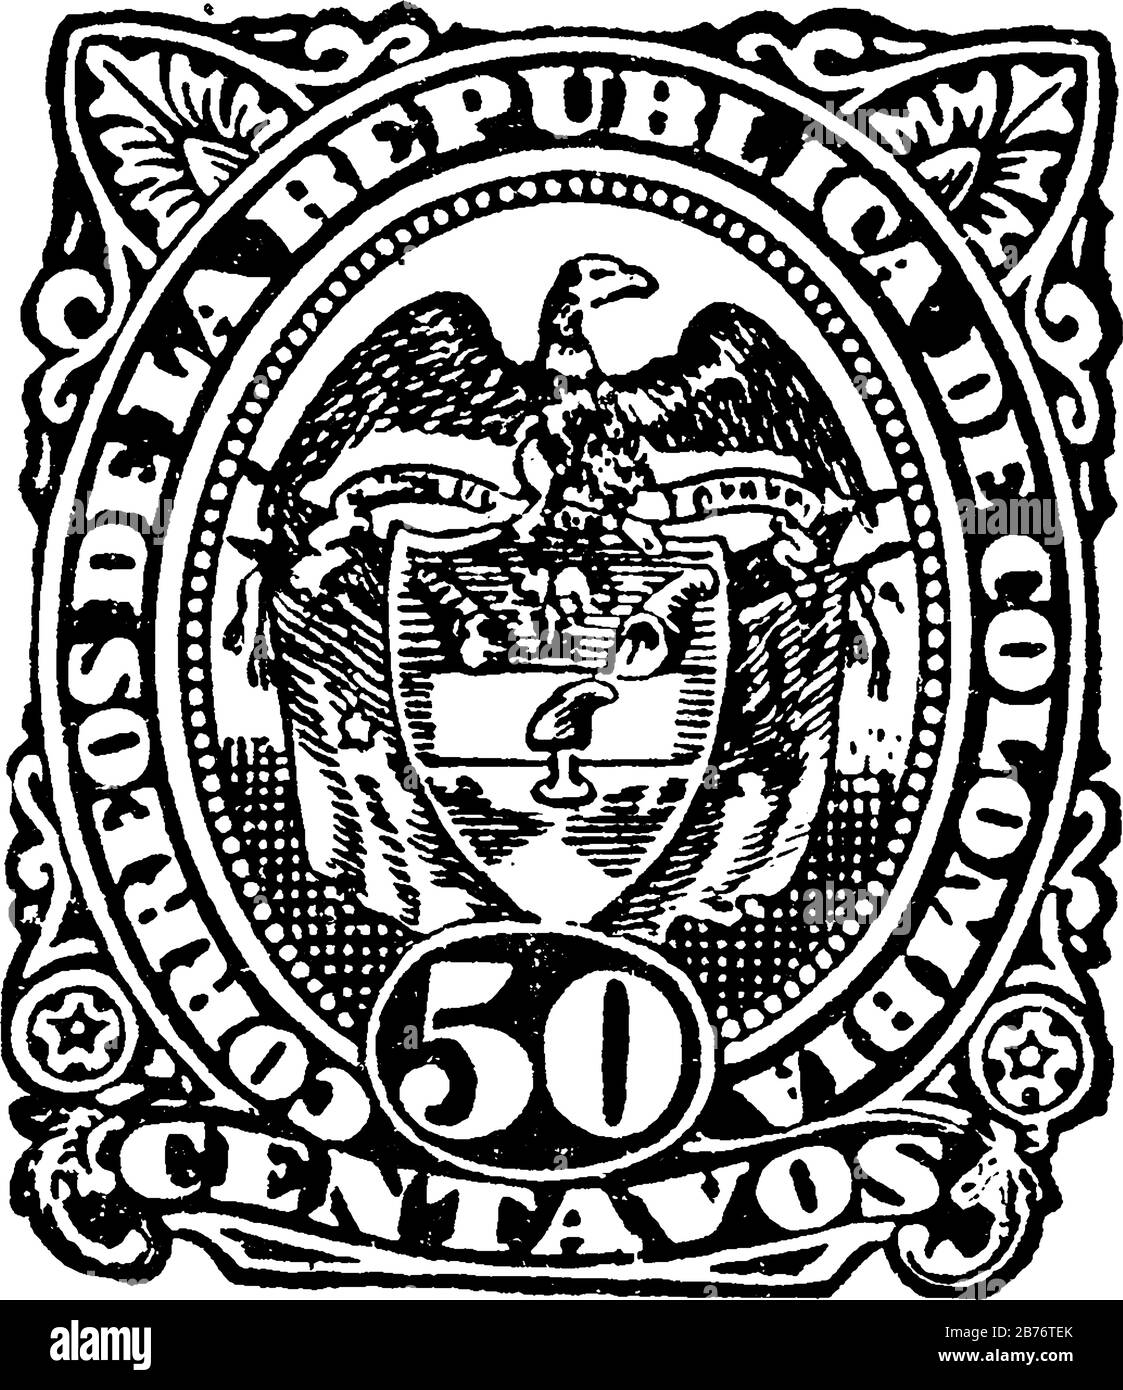 Francobollo della Repubblica colombiana (50 centavos) dal 1888-1889, un piccolo pezzo adesivo di carta è stato attaccato a qualcosa per mostrare una quantità di denaro pagato, vintage Illustrazione Vettoriale